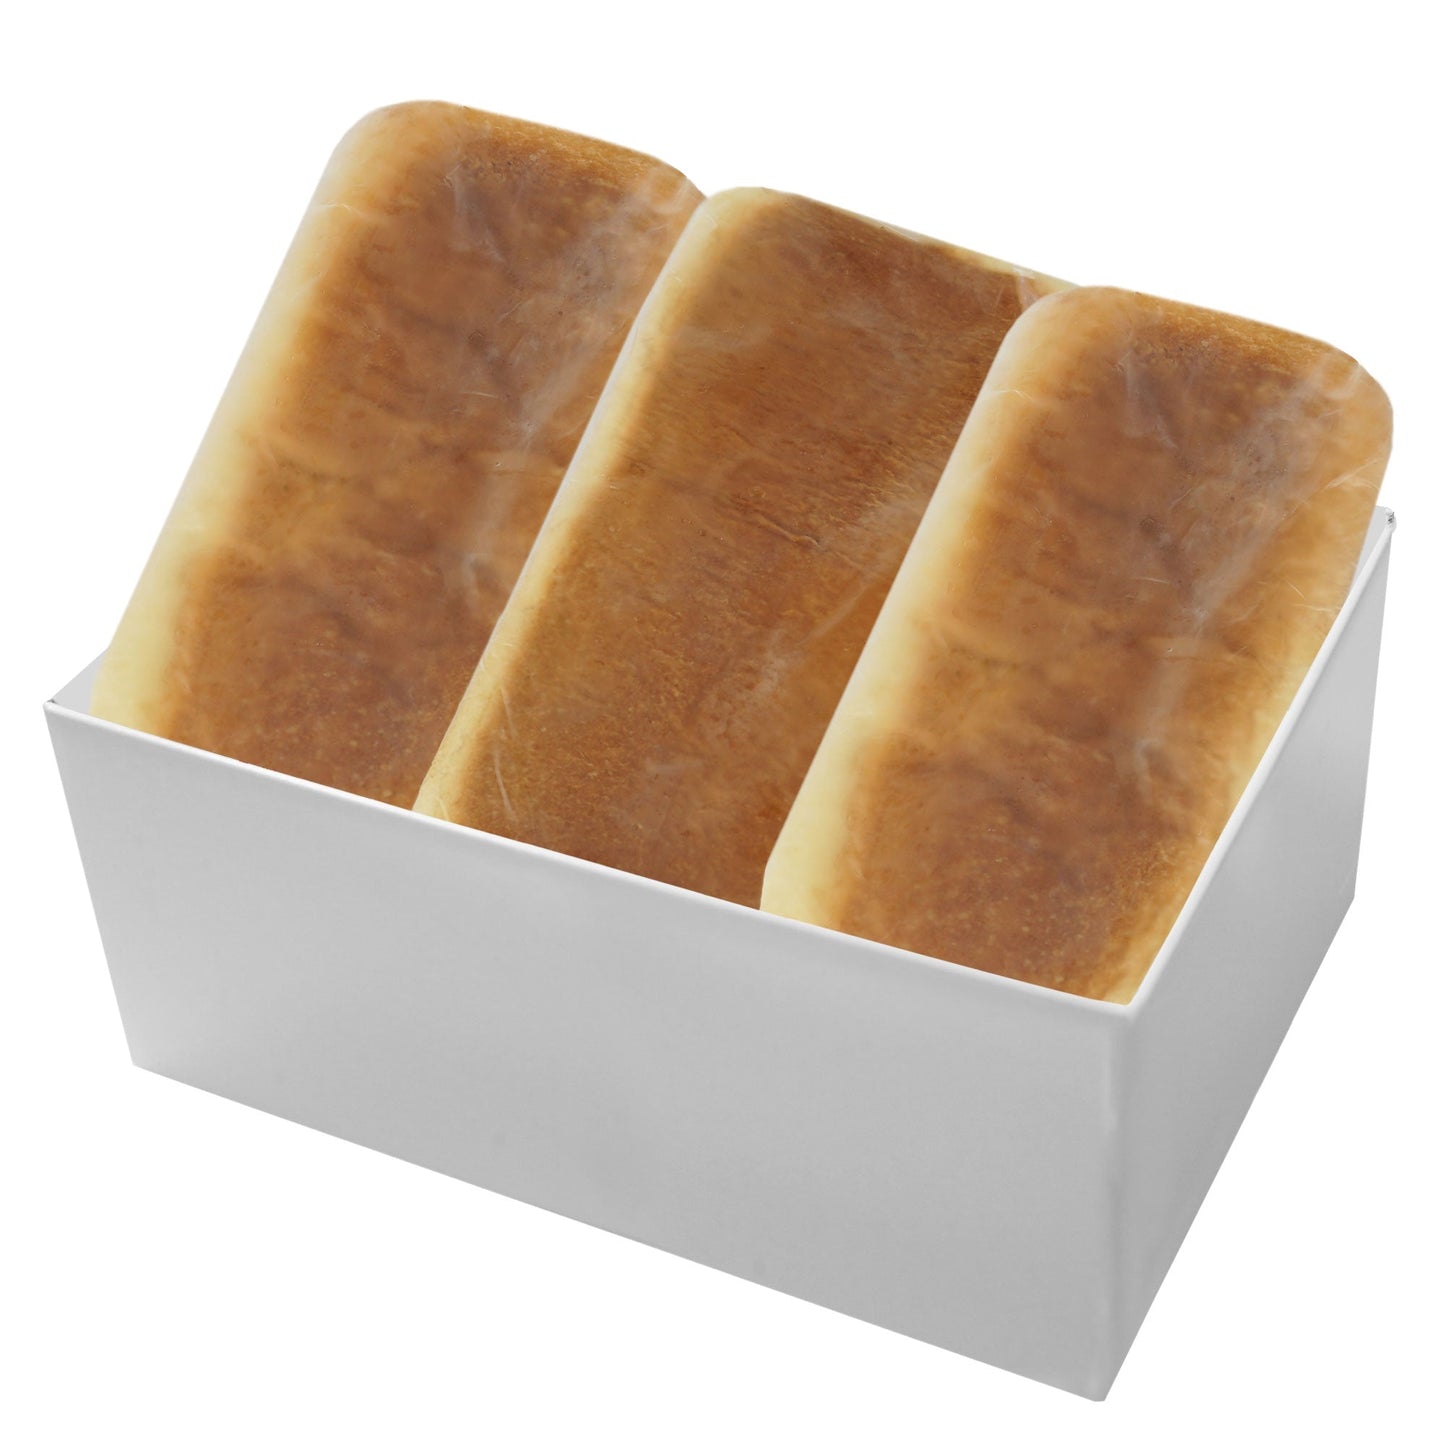 とろける食パン・塩バター食パン6斤セット